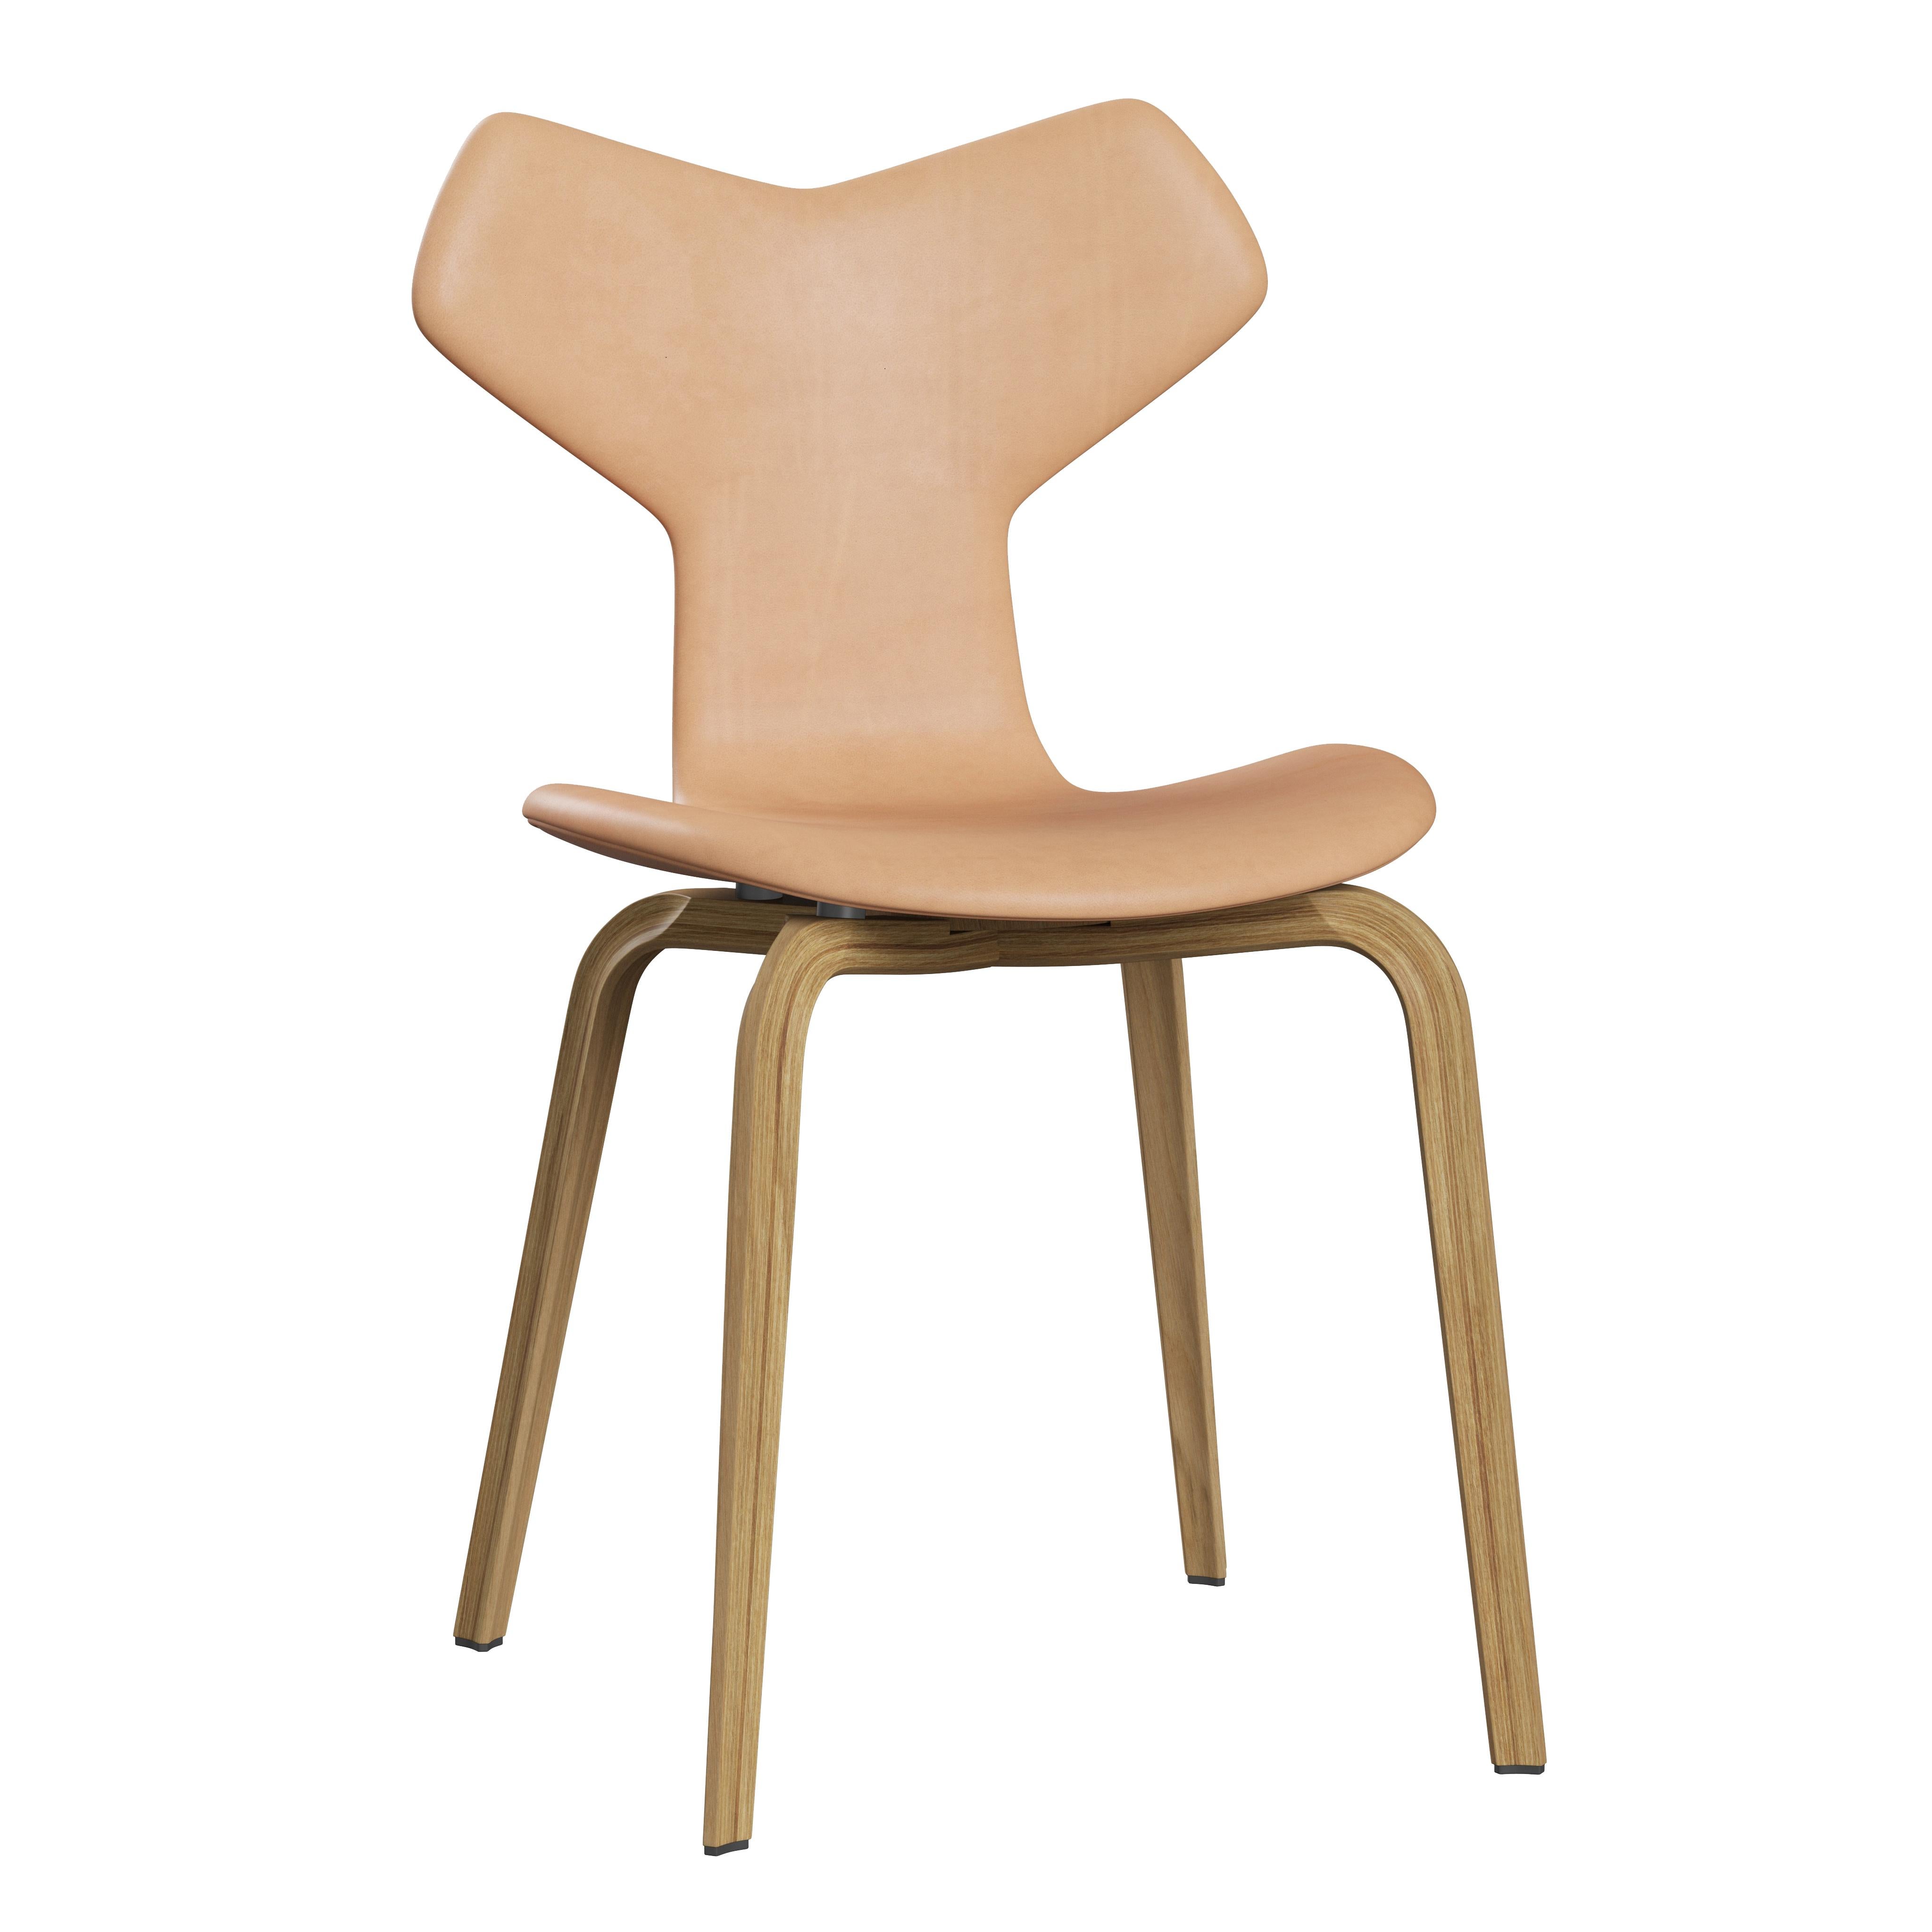 Scandinavian Modern Arne Jacobsen 'Grand Prix' Chair for Fritz Hansen in Full Leather Upholstery For Sale